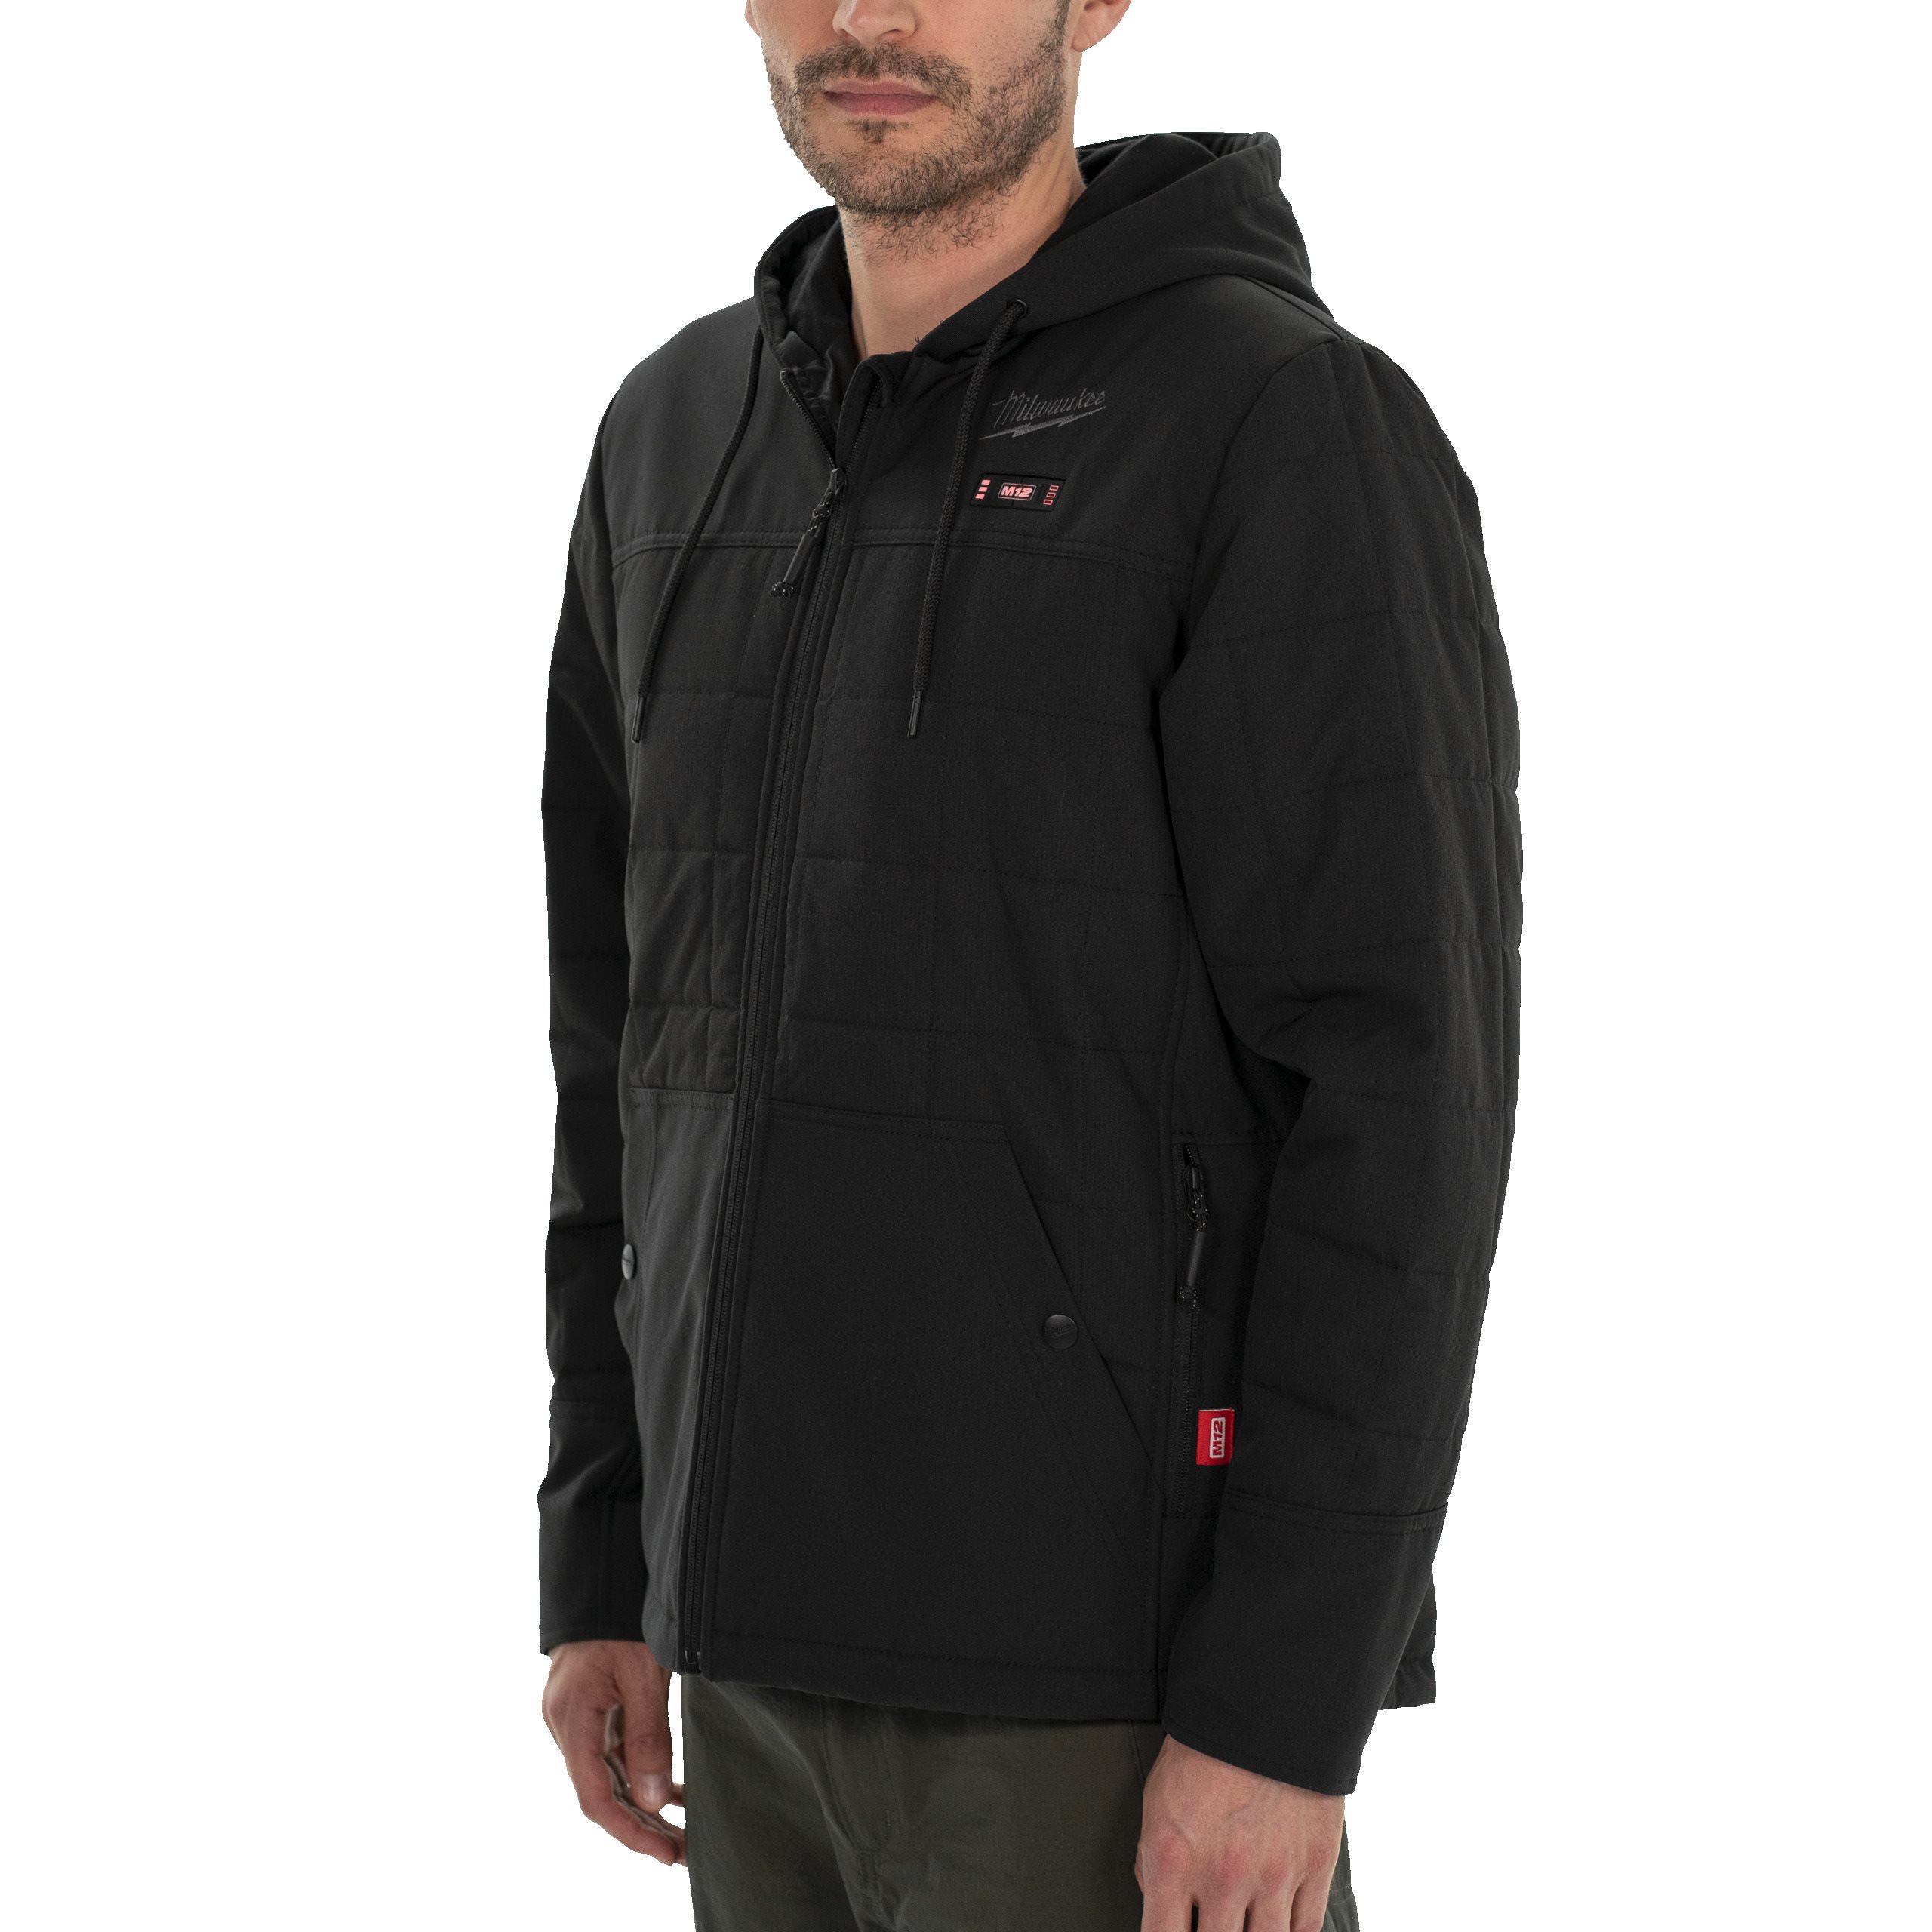 Куртка черная с подогревом и капюшоном Milwaukee M12 HPJ BL2-0 (S) (Арт. 4932480071)